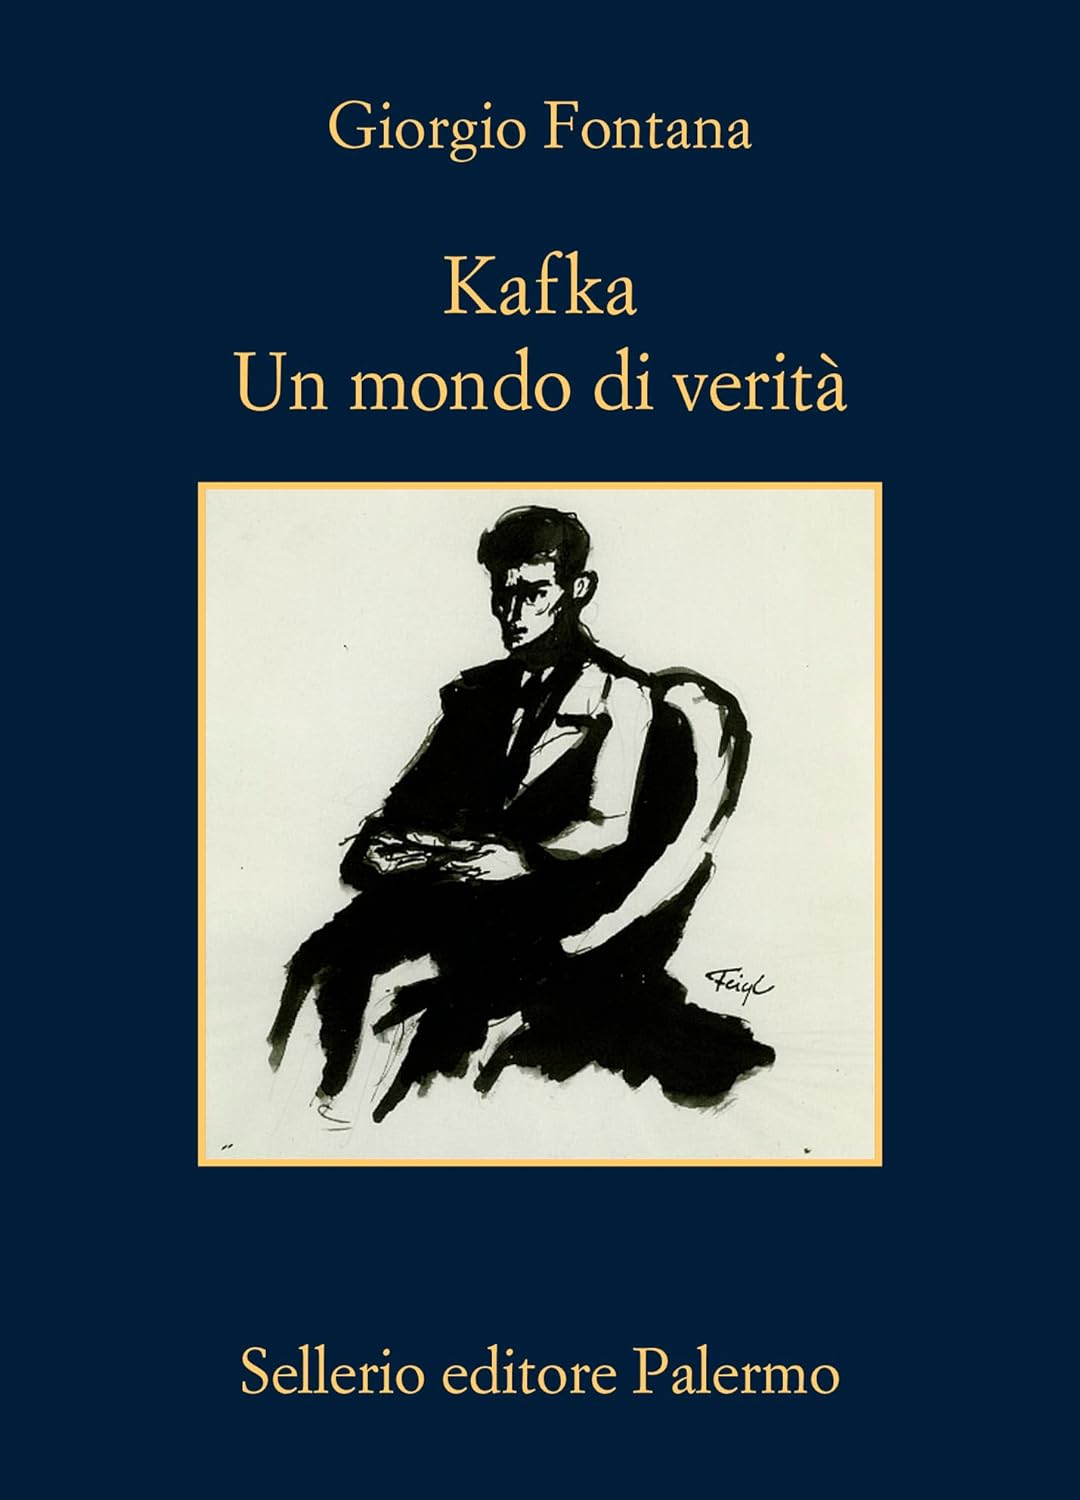 Franz Kafka – Un mondo di verità - Giorgio Fontana, Sellerio